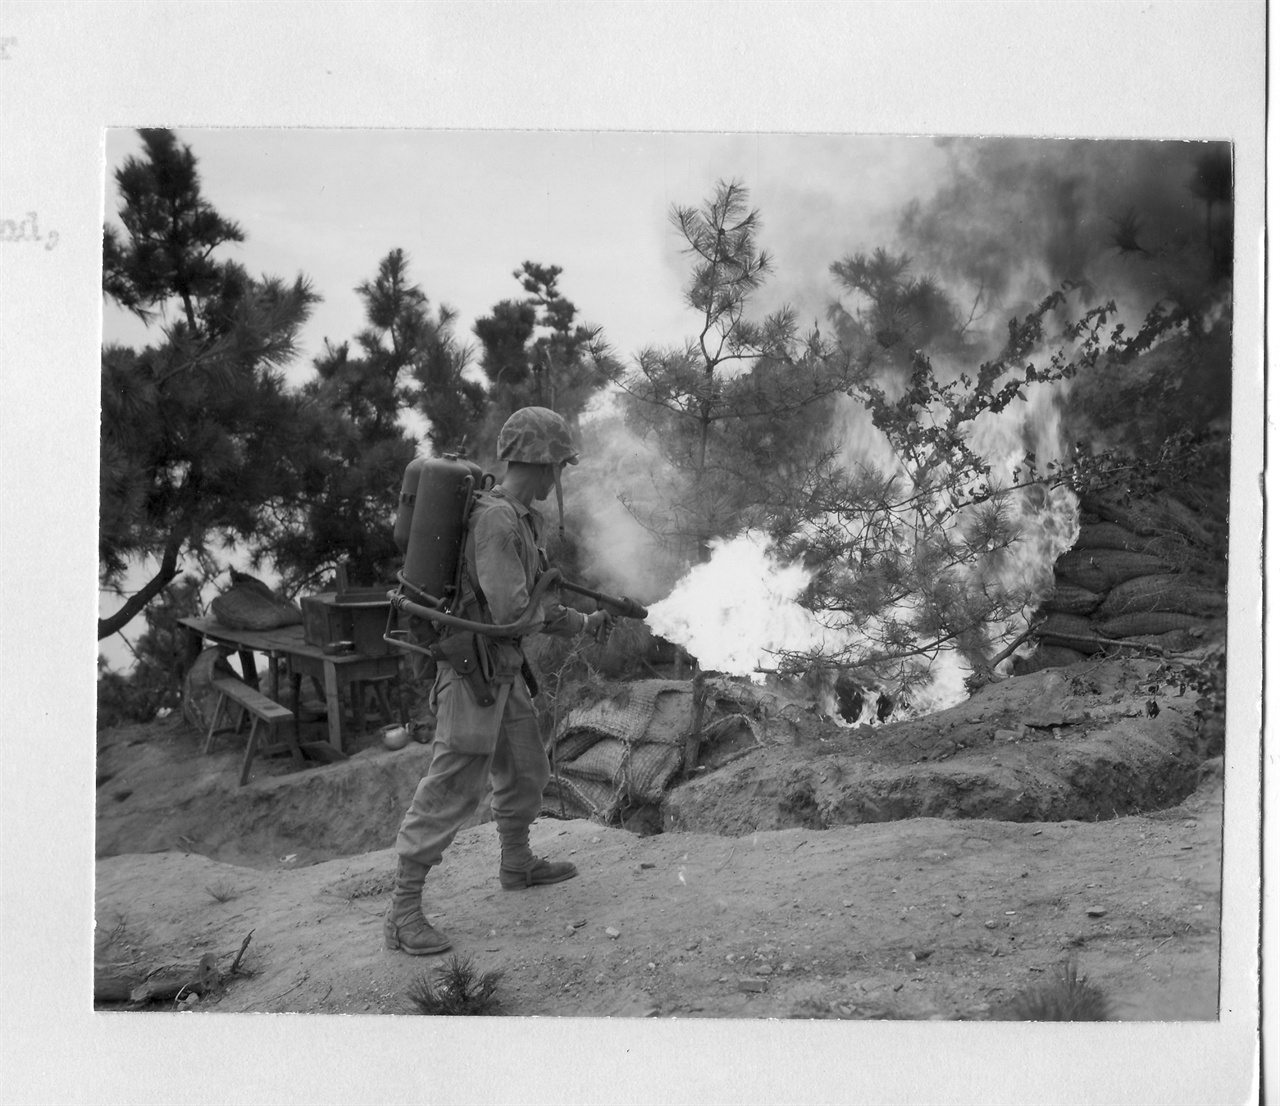  1950. 9. 16. 인천. 한 미 해병대 병사가 인민군 참호를 향하여 화염방사기로 불을 뿜고 있다.